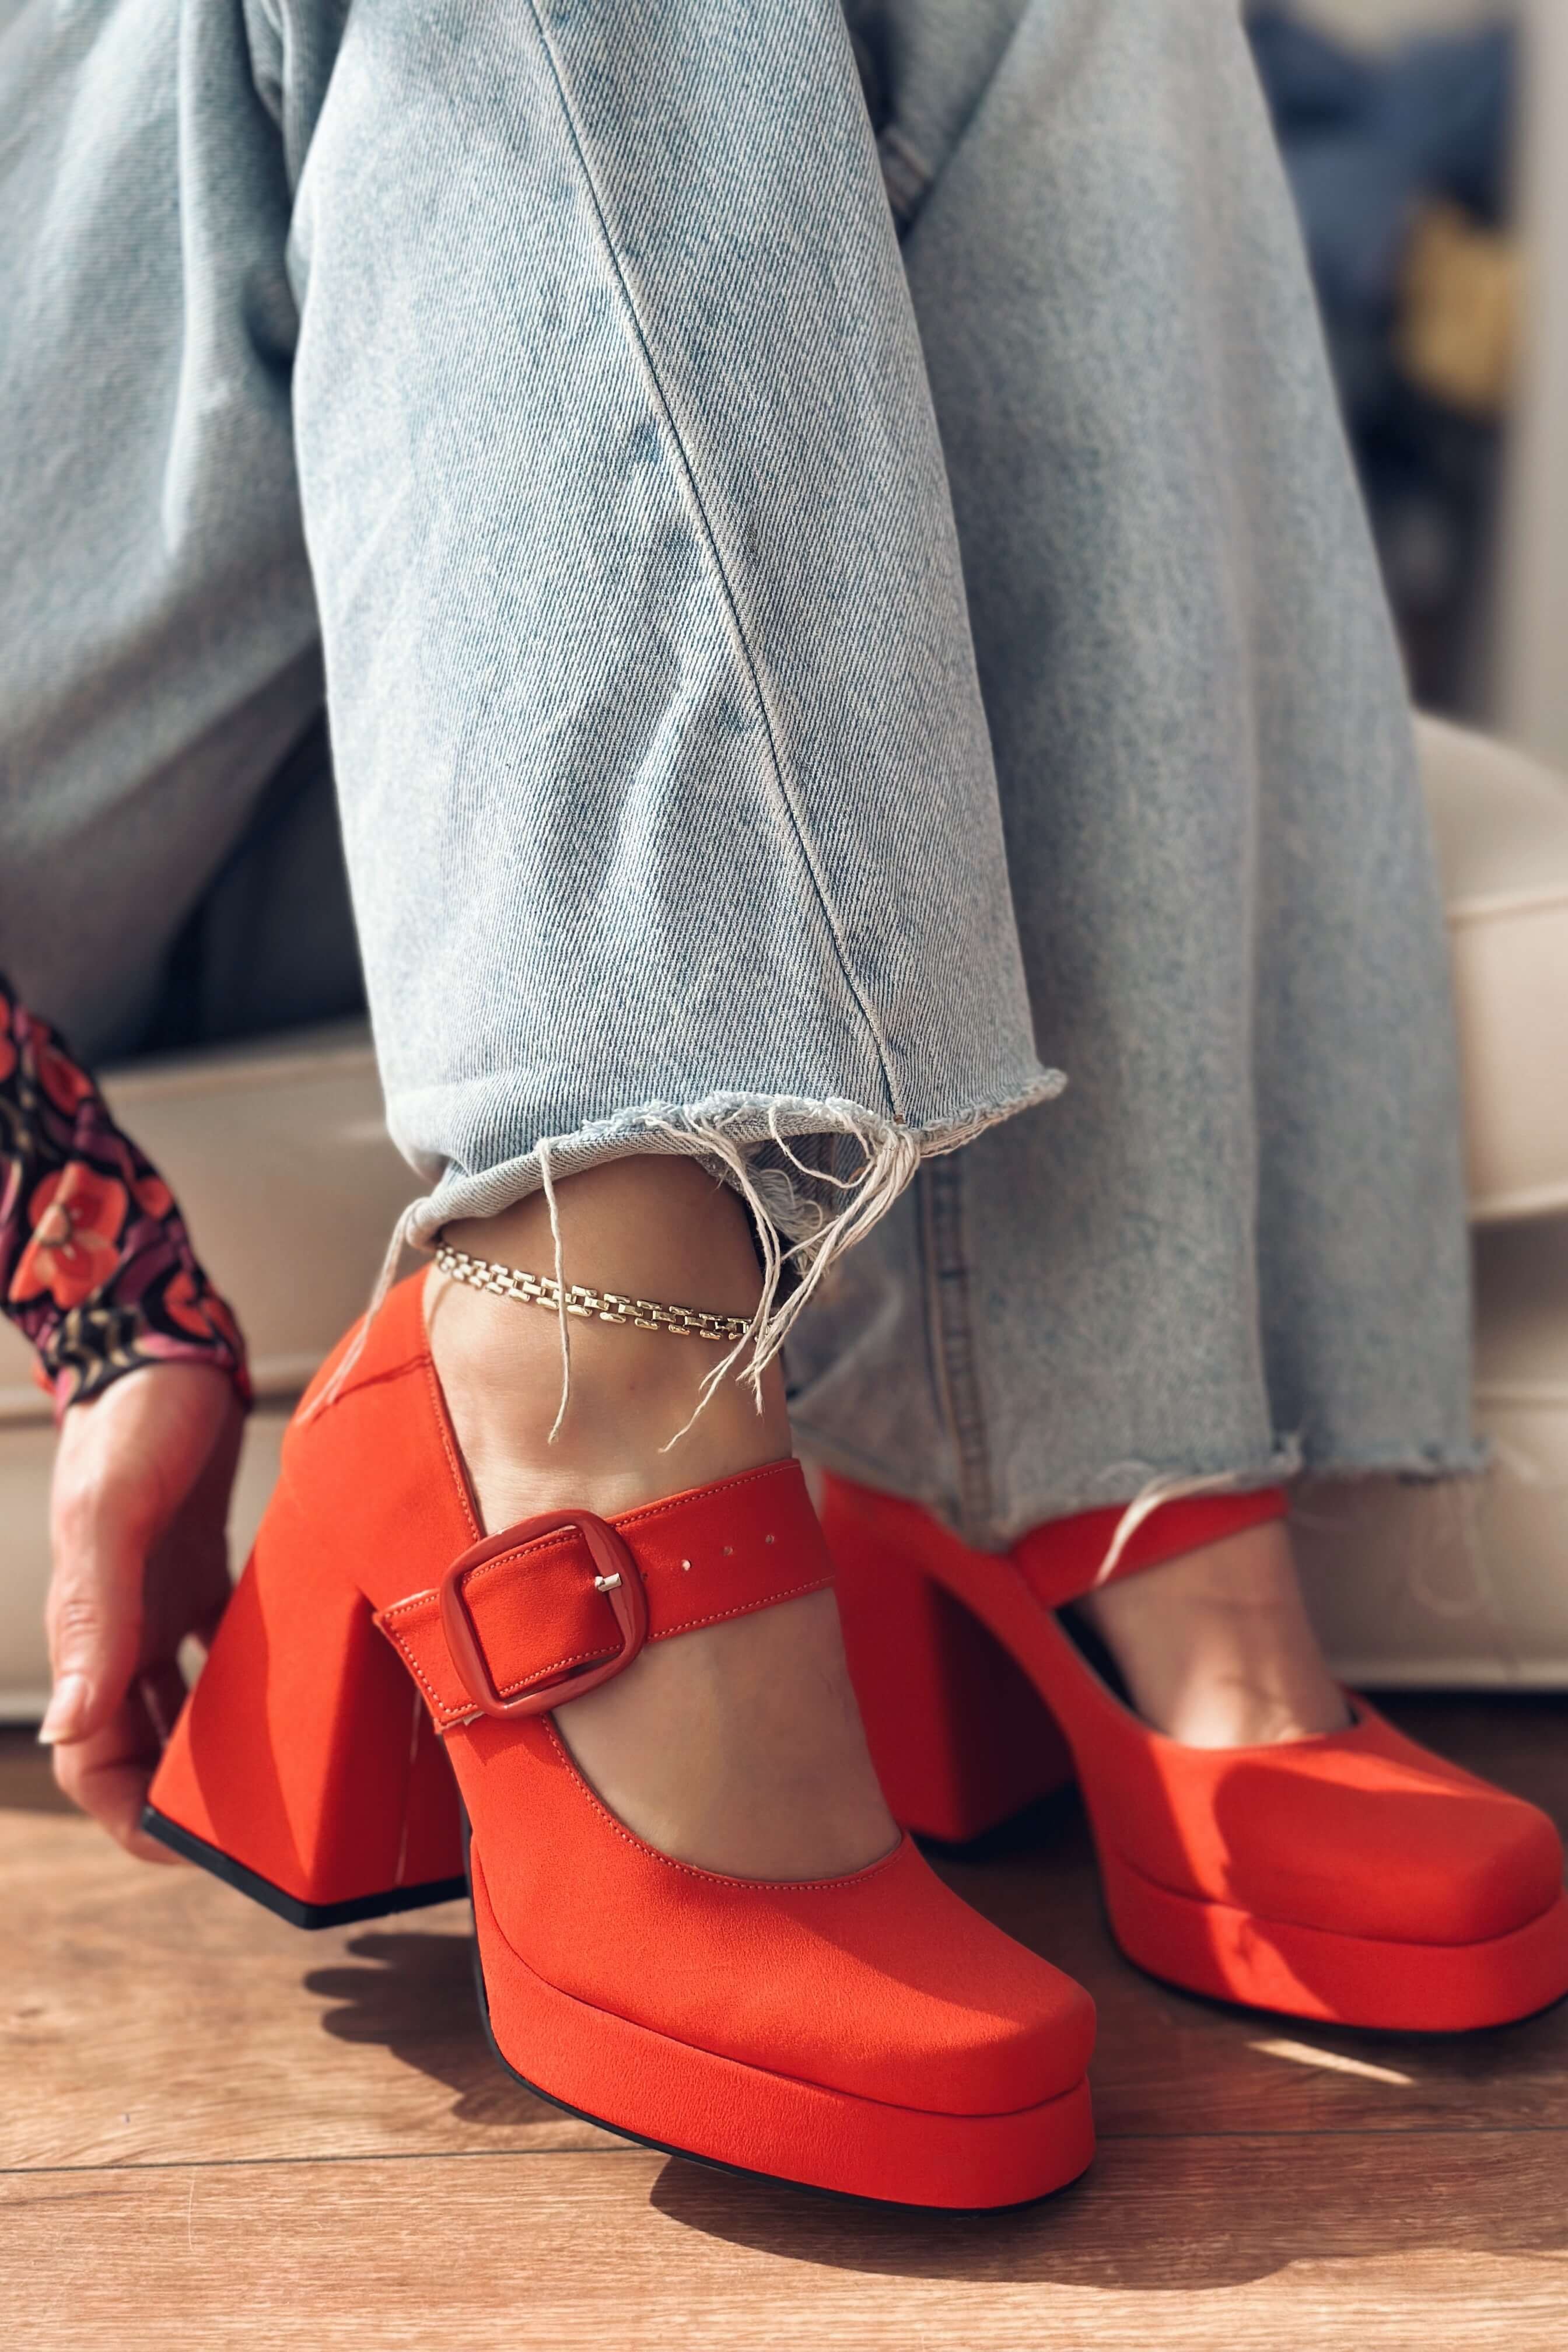 Alpons Satin Women's Platform Heels Shoe Orange